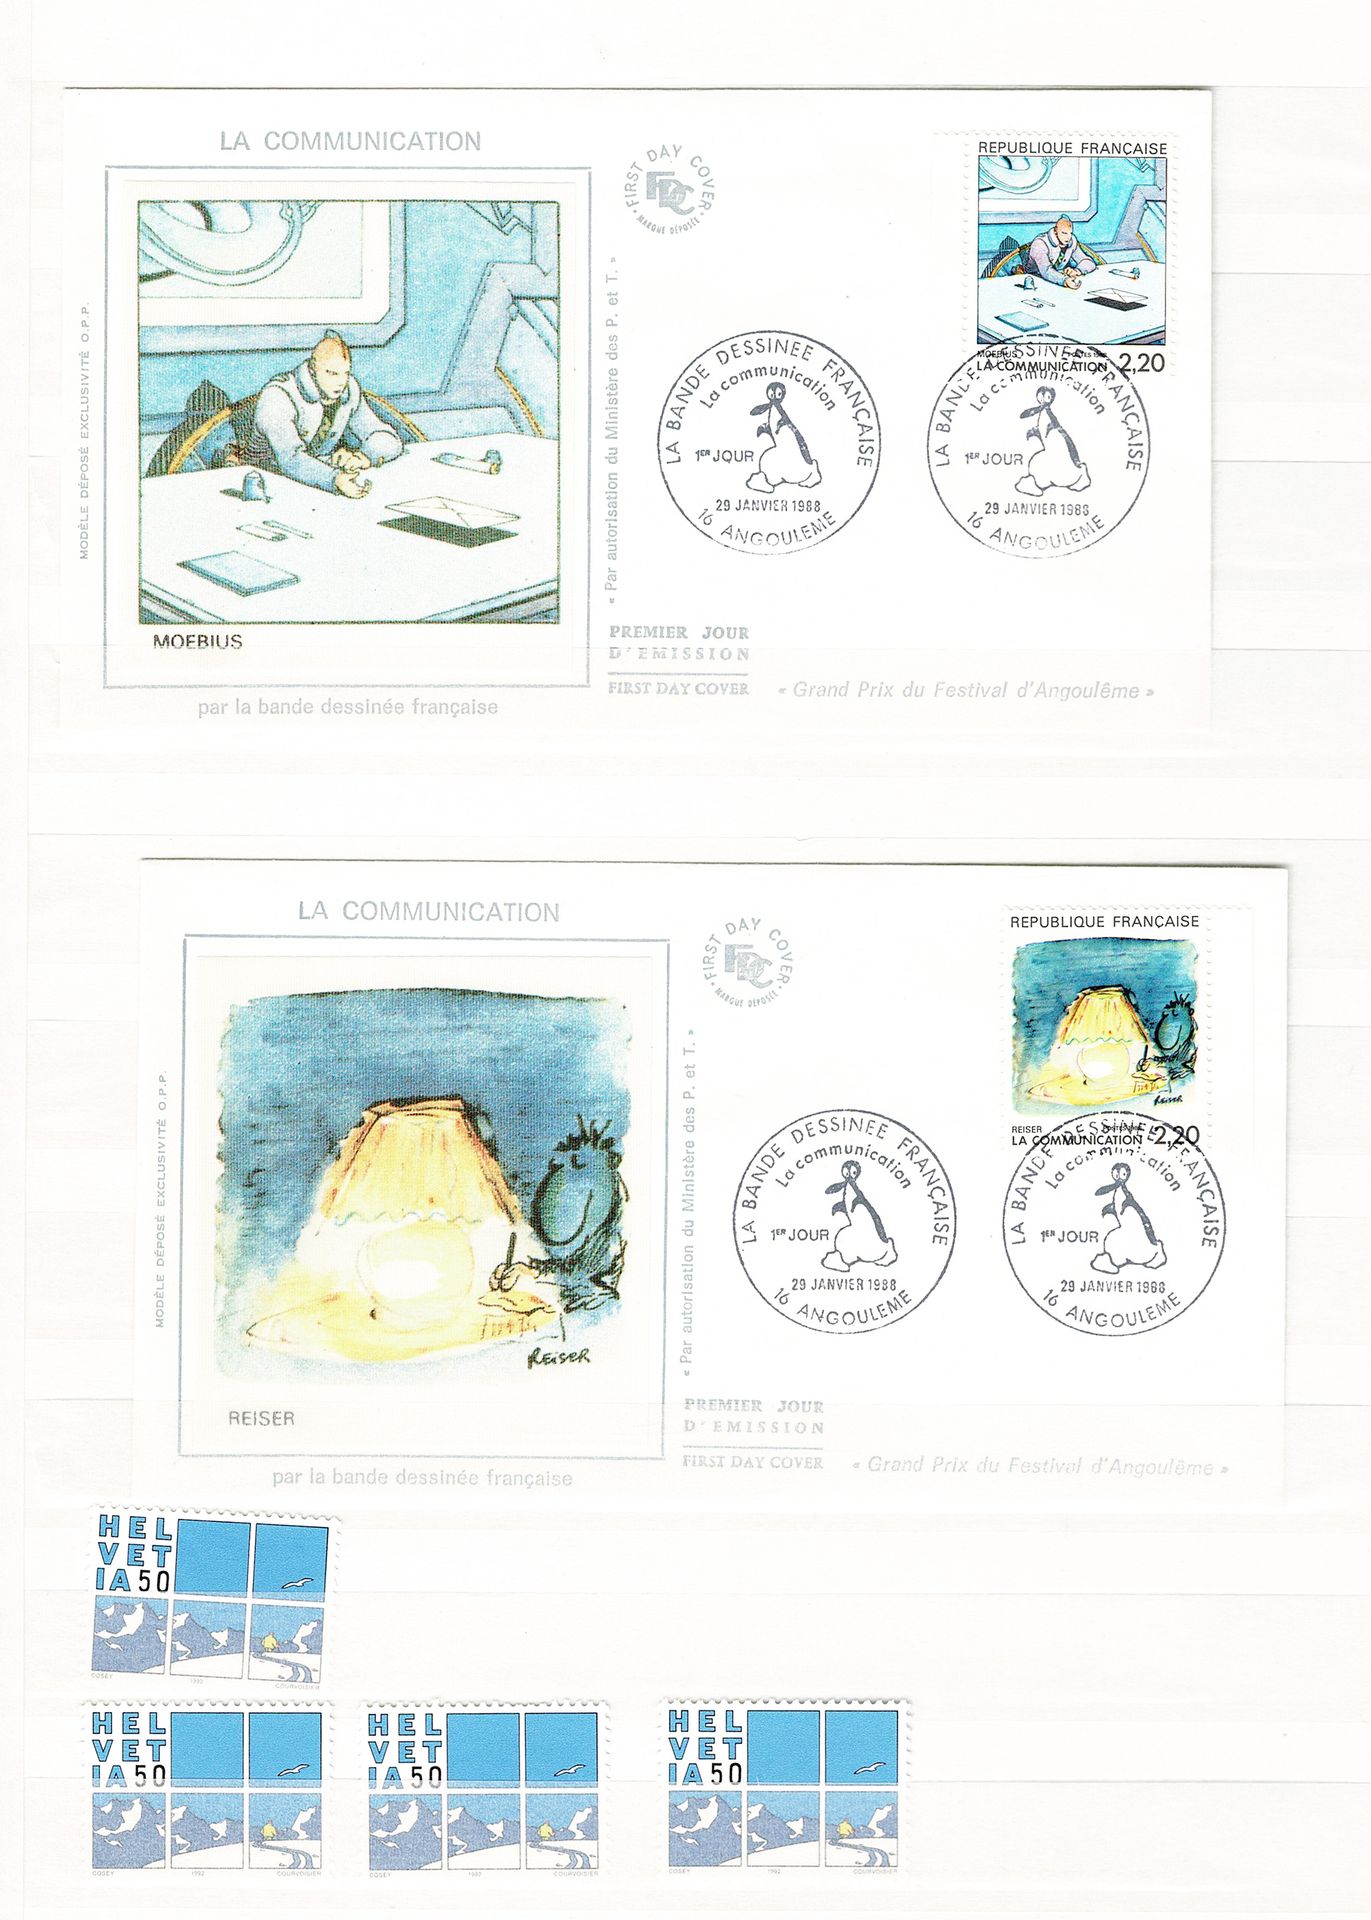 DIVERS 
Set di oltre 350 francobolli sul tema del fumetto.